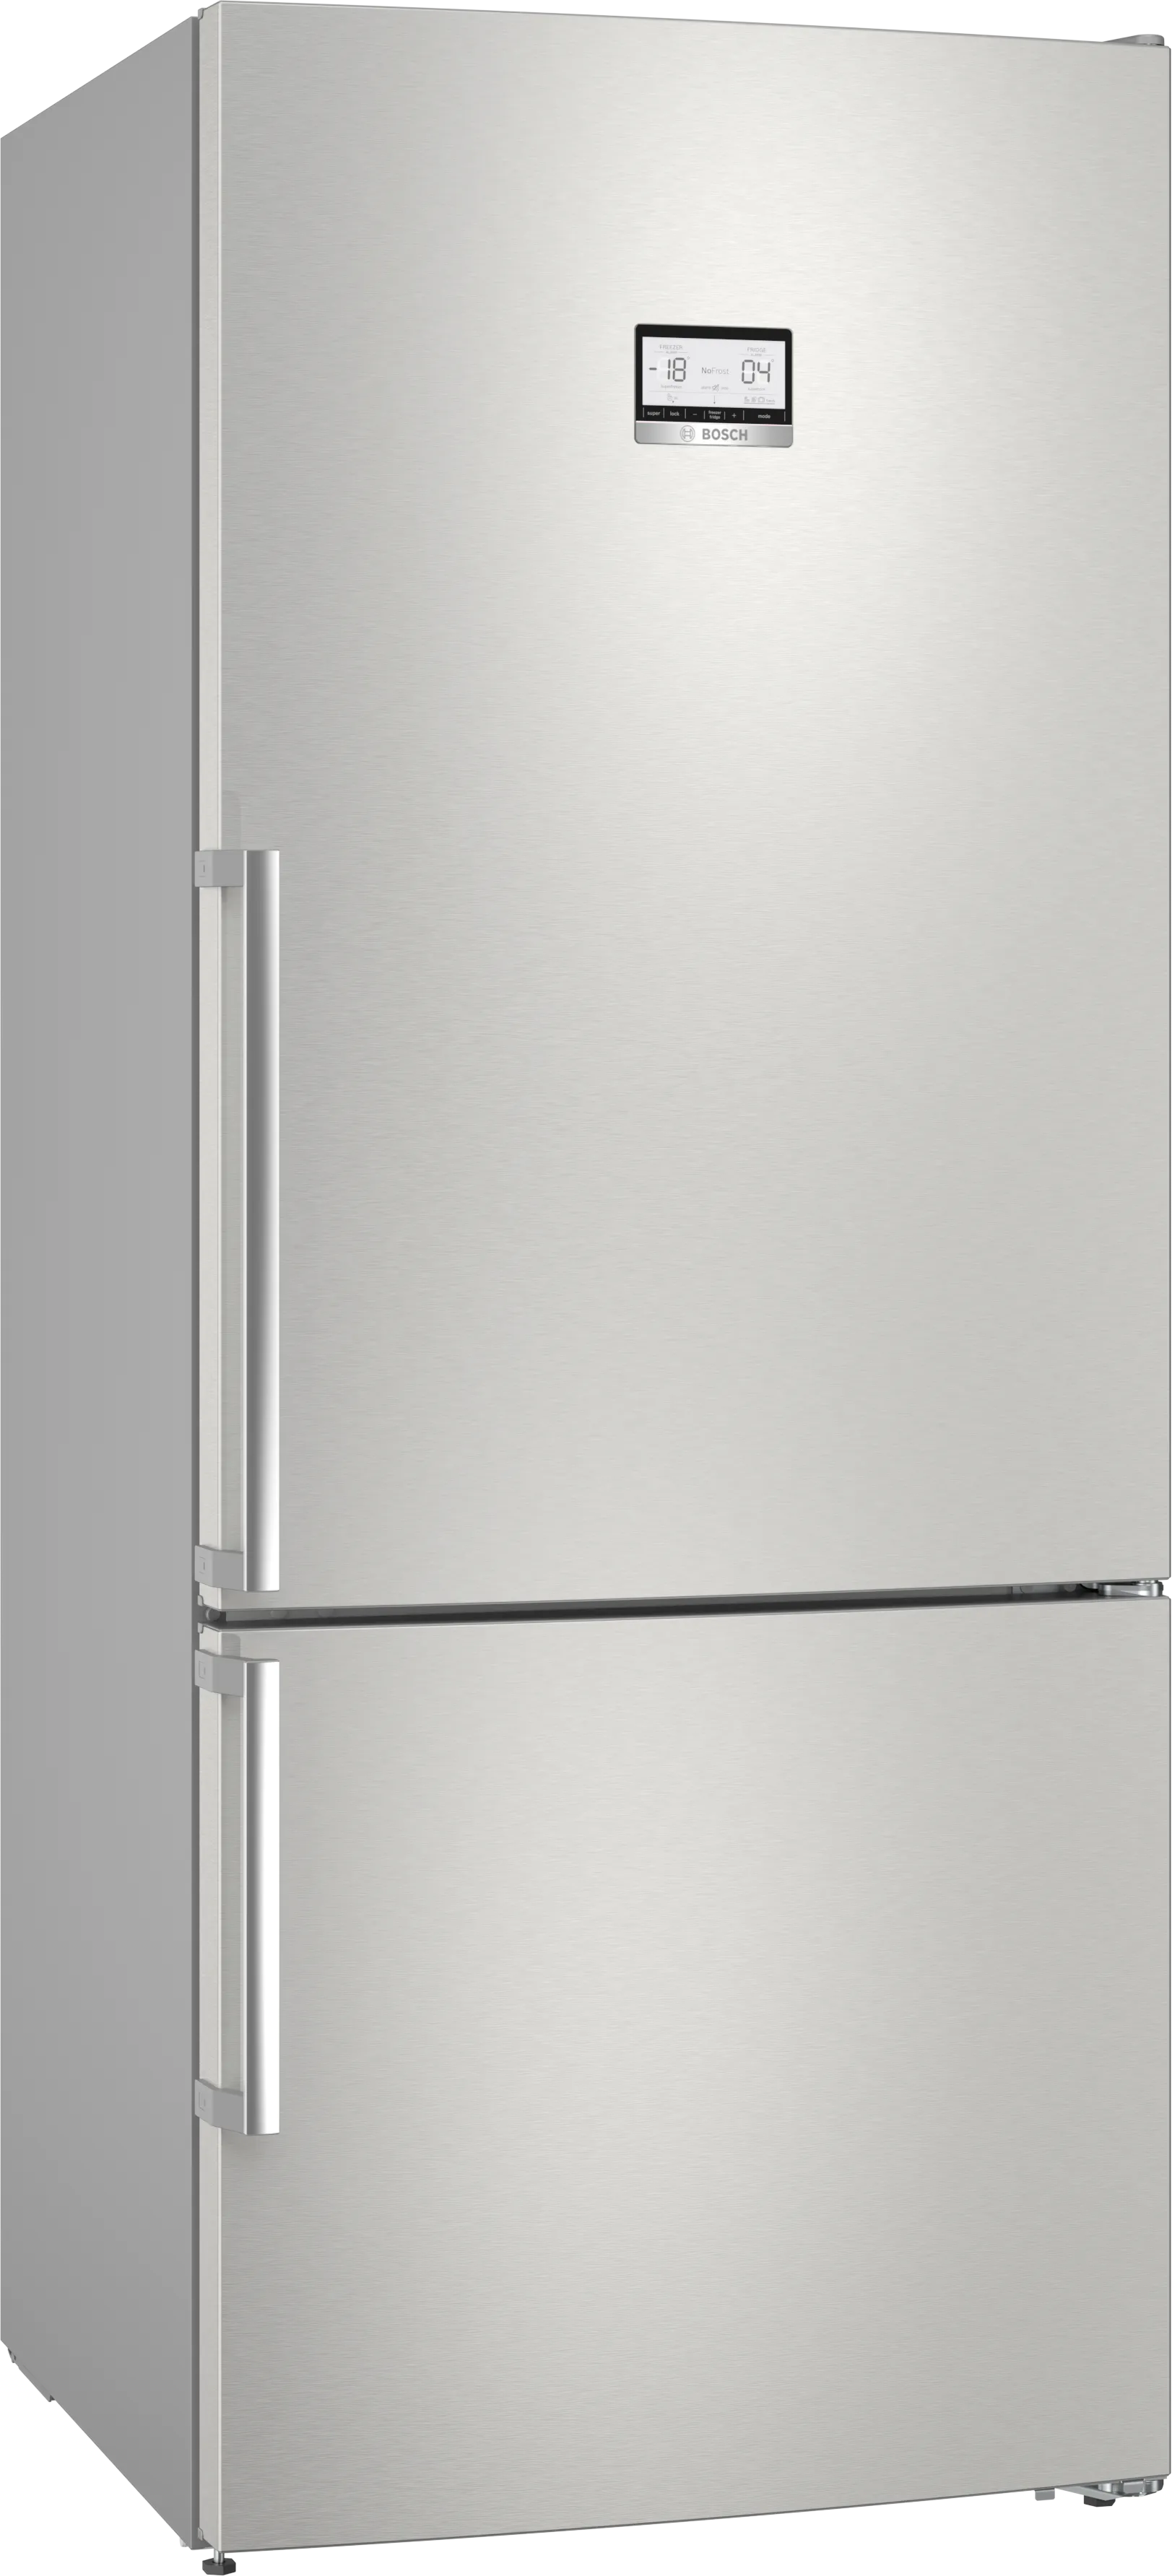 Serie 6 Freistehende Kühl-Gefrier-Kombination mit Gefrierbereich unten 186 x 75 cm Edelstahl (mit Antifingerprint) 